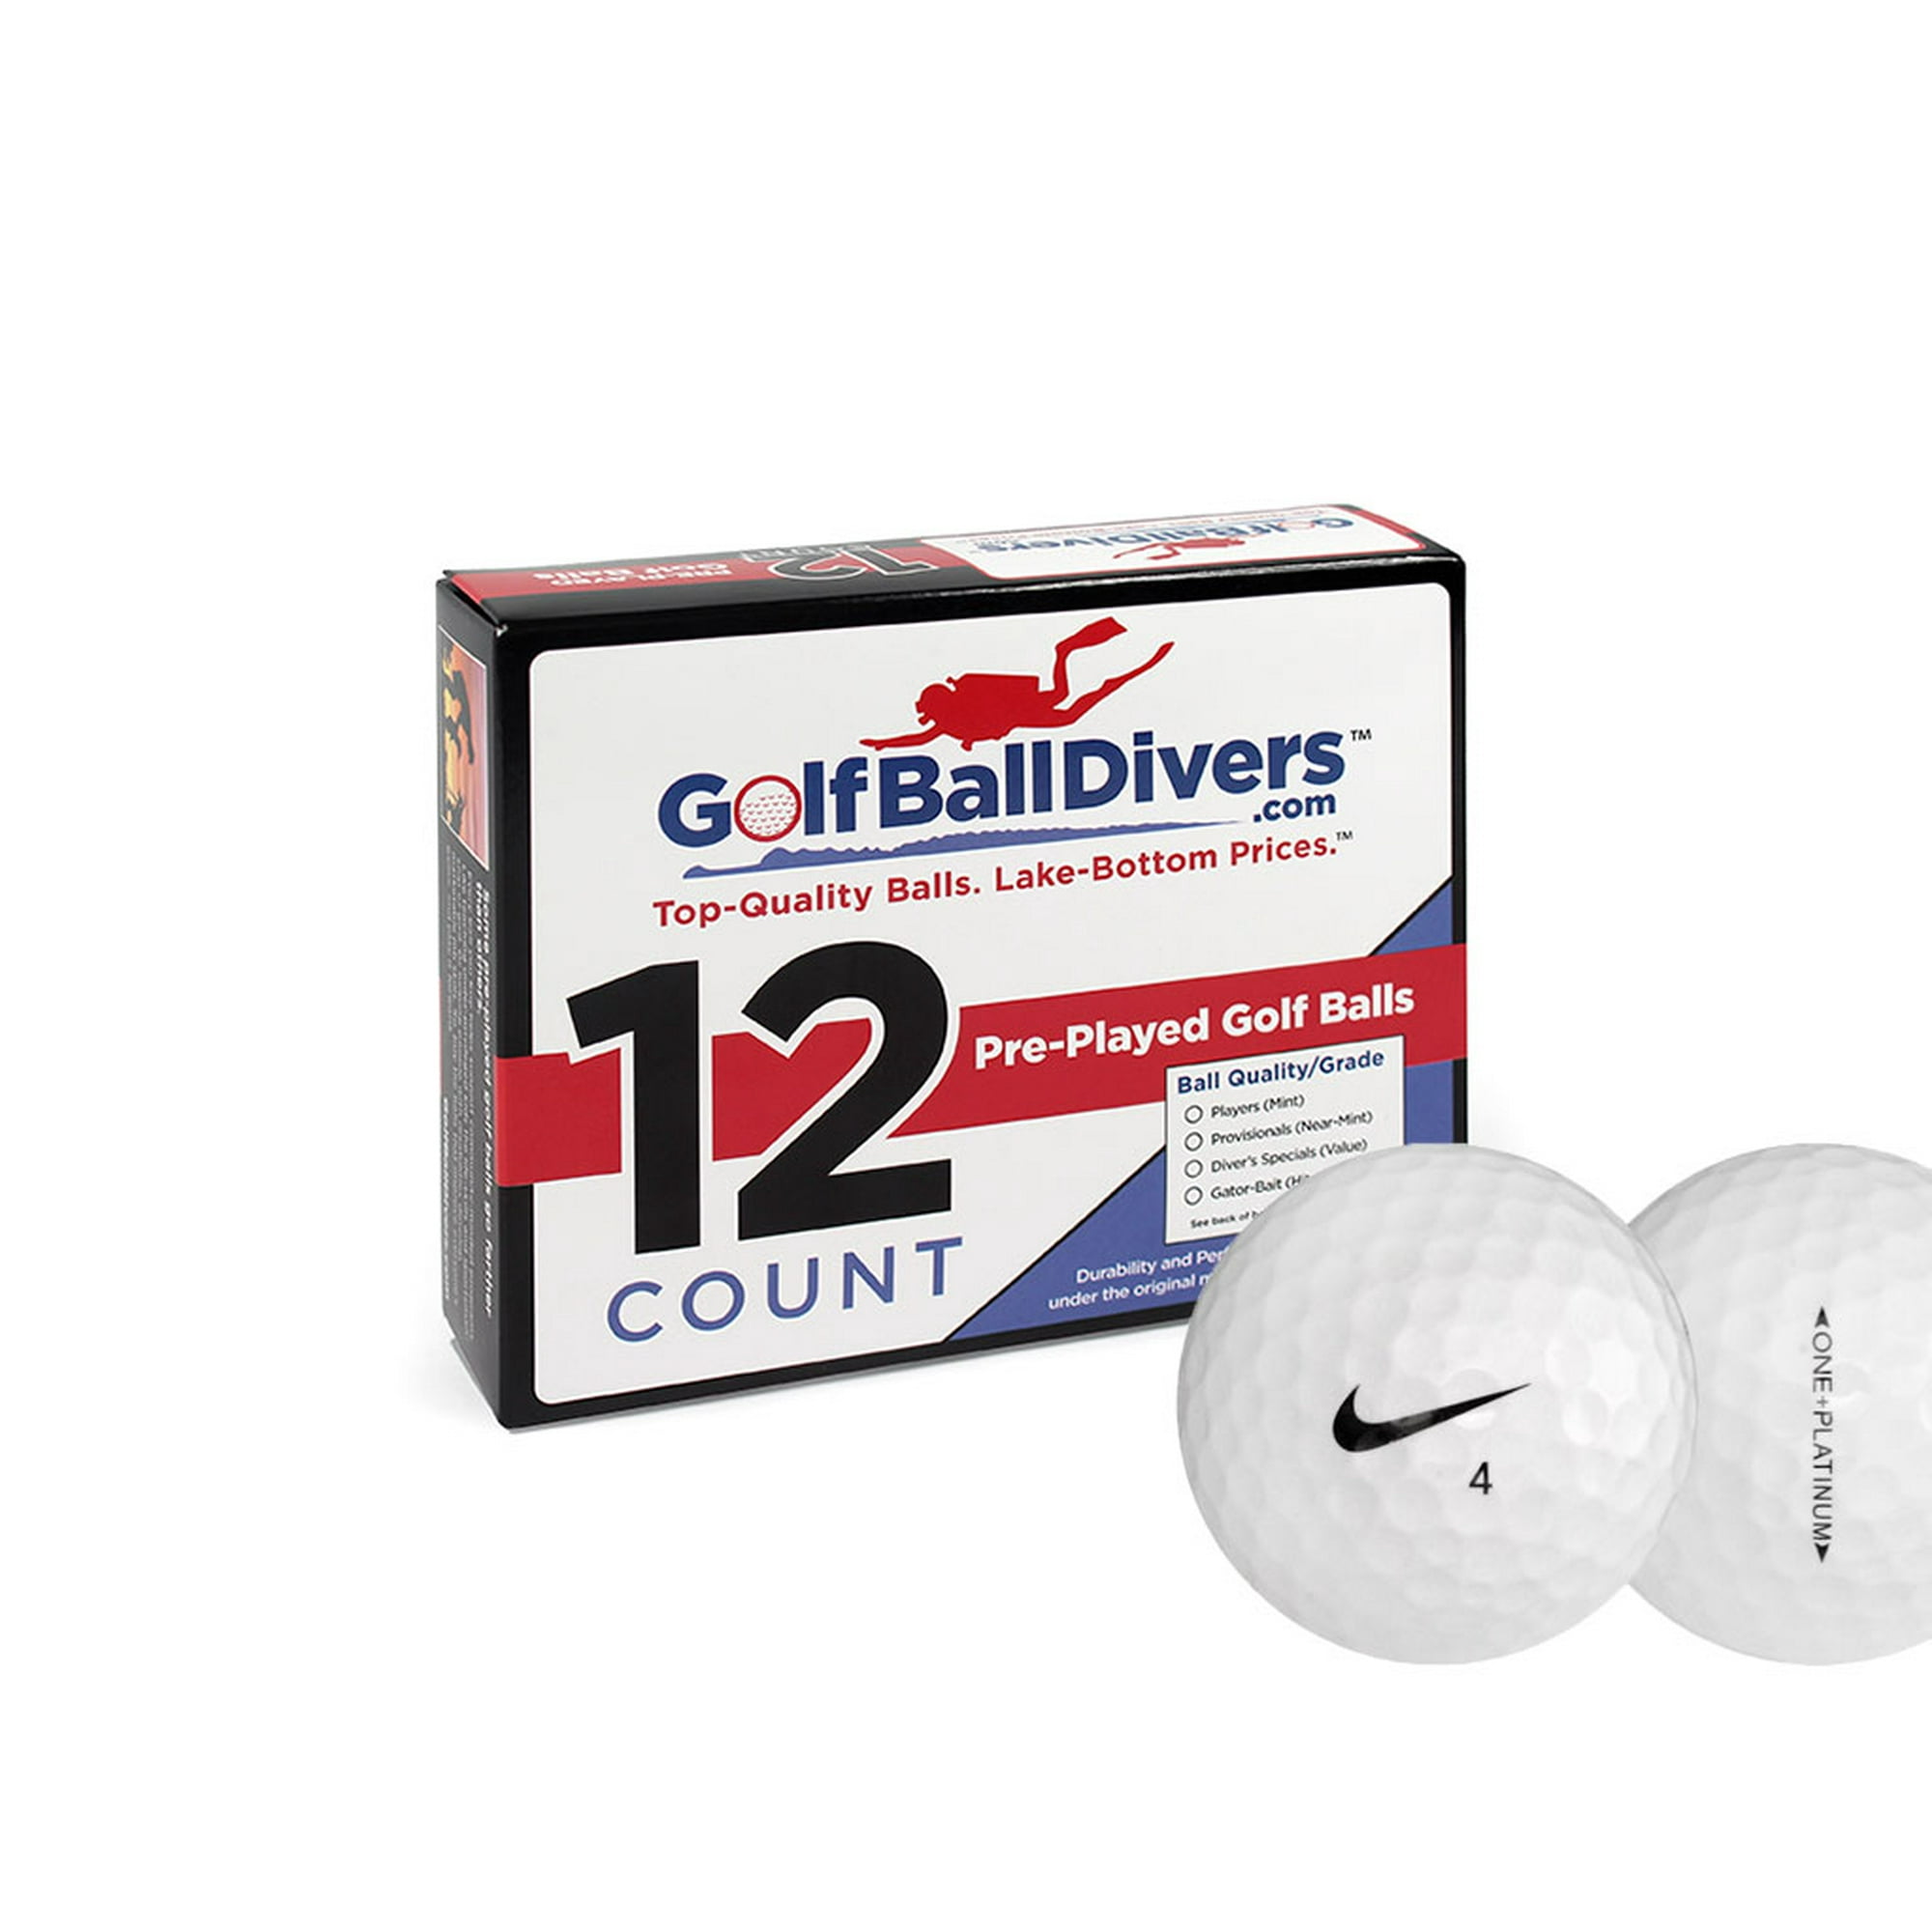 brugt tandpine påske Nike One Platinum Golf Balls, Used, Good Quality, 12 Pack - Walmart.com